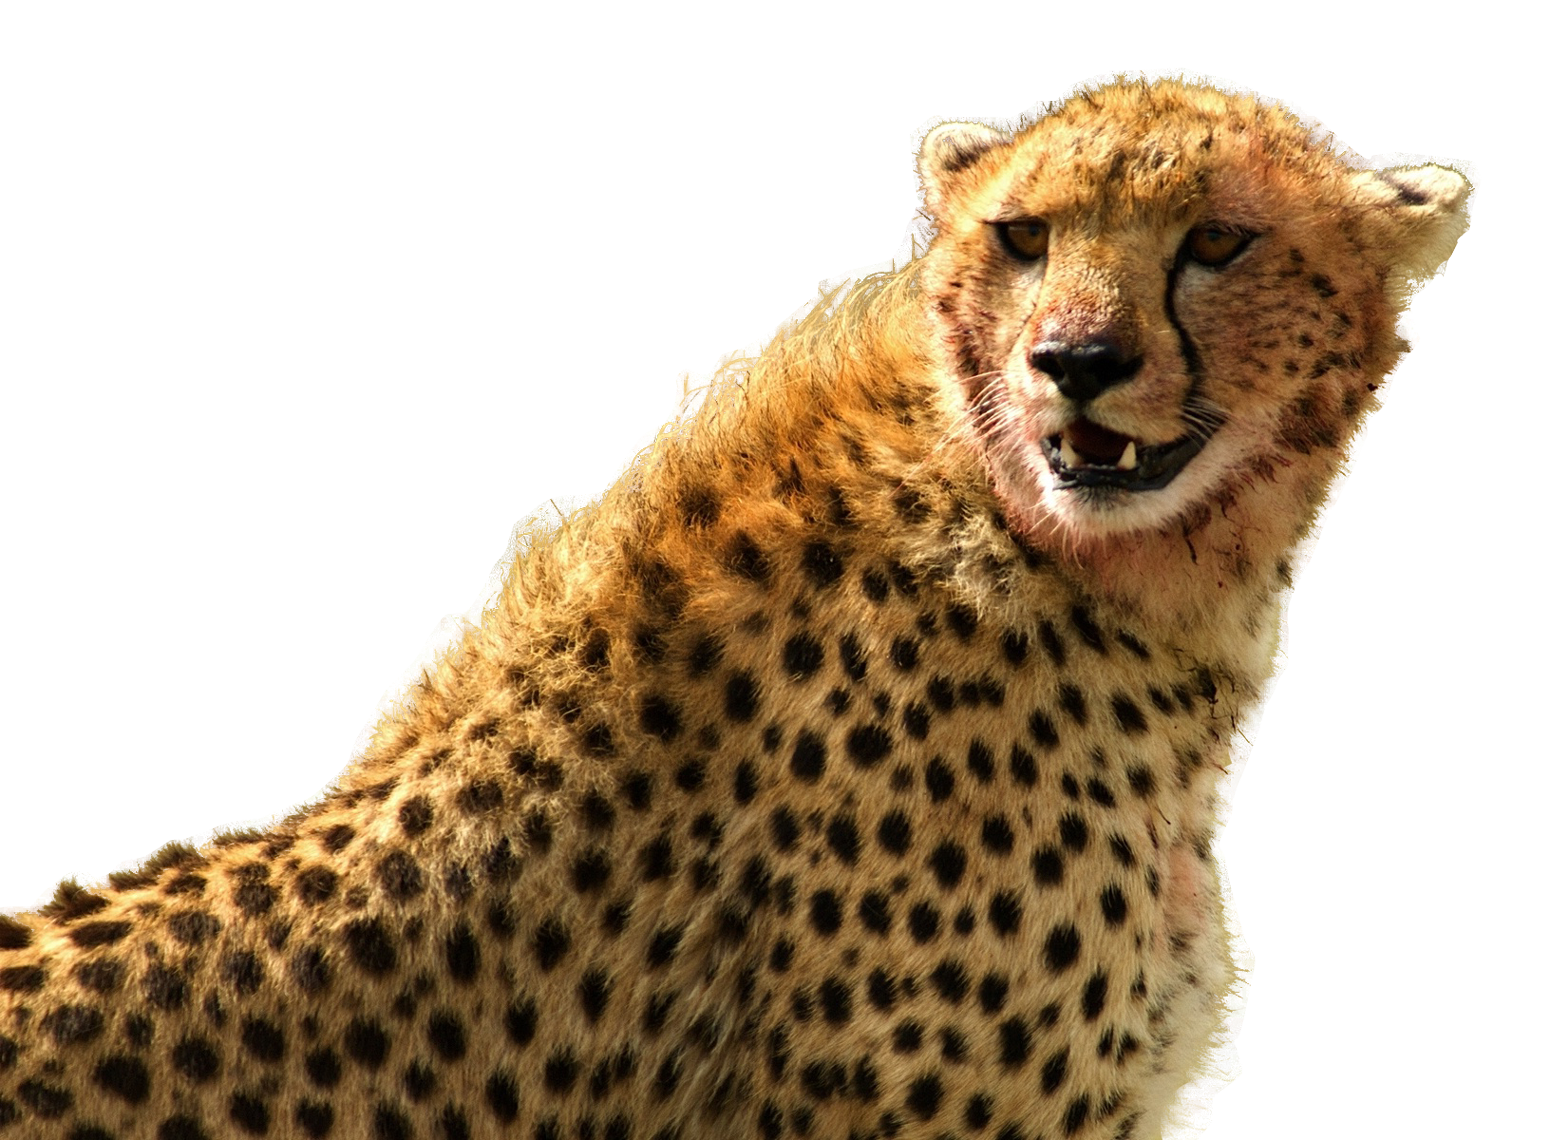 fast clipart cheetah